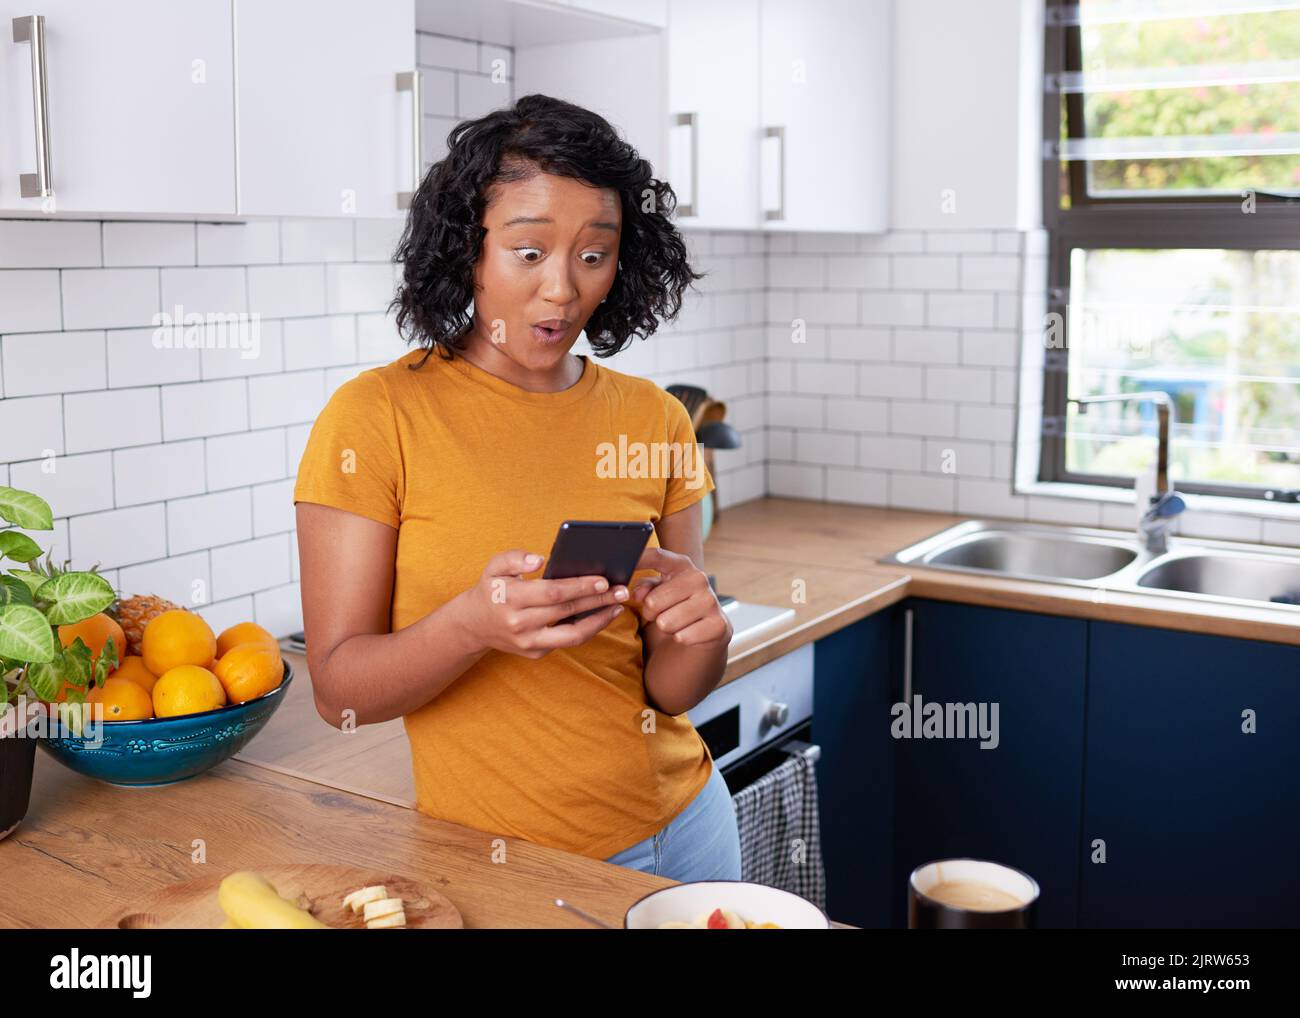 Eine junge Frau sieht schockiert aus, als sie beim Frühstück in der Küche auf ihrem Telefon scrollt Stockfoto